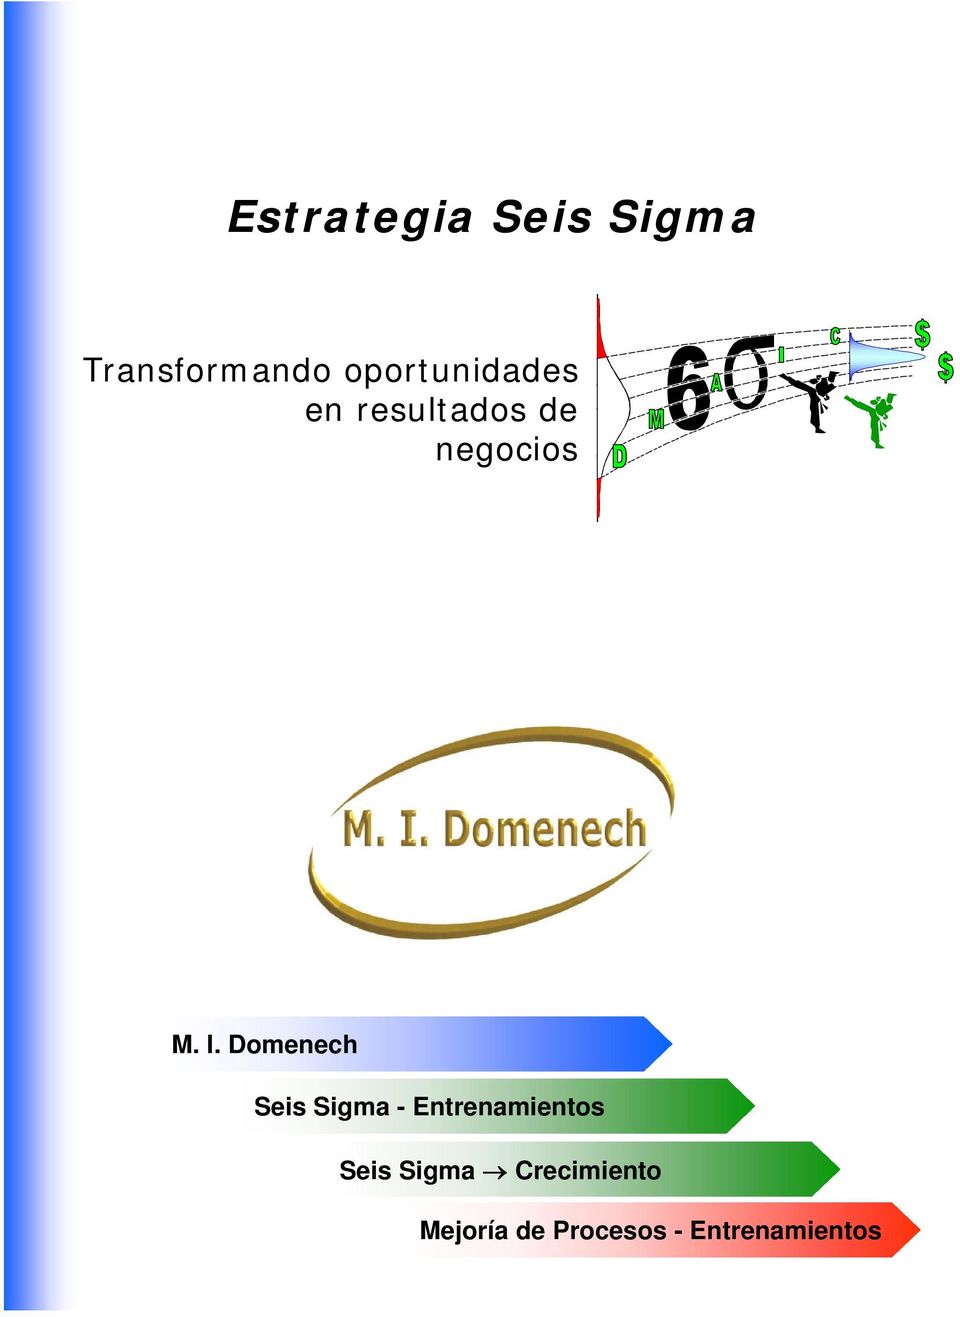 Domenech Seis Sigma - Entrenamientos Seis